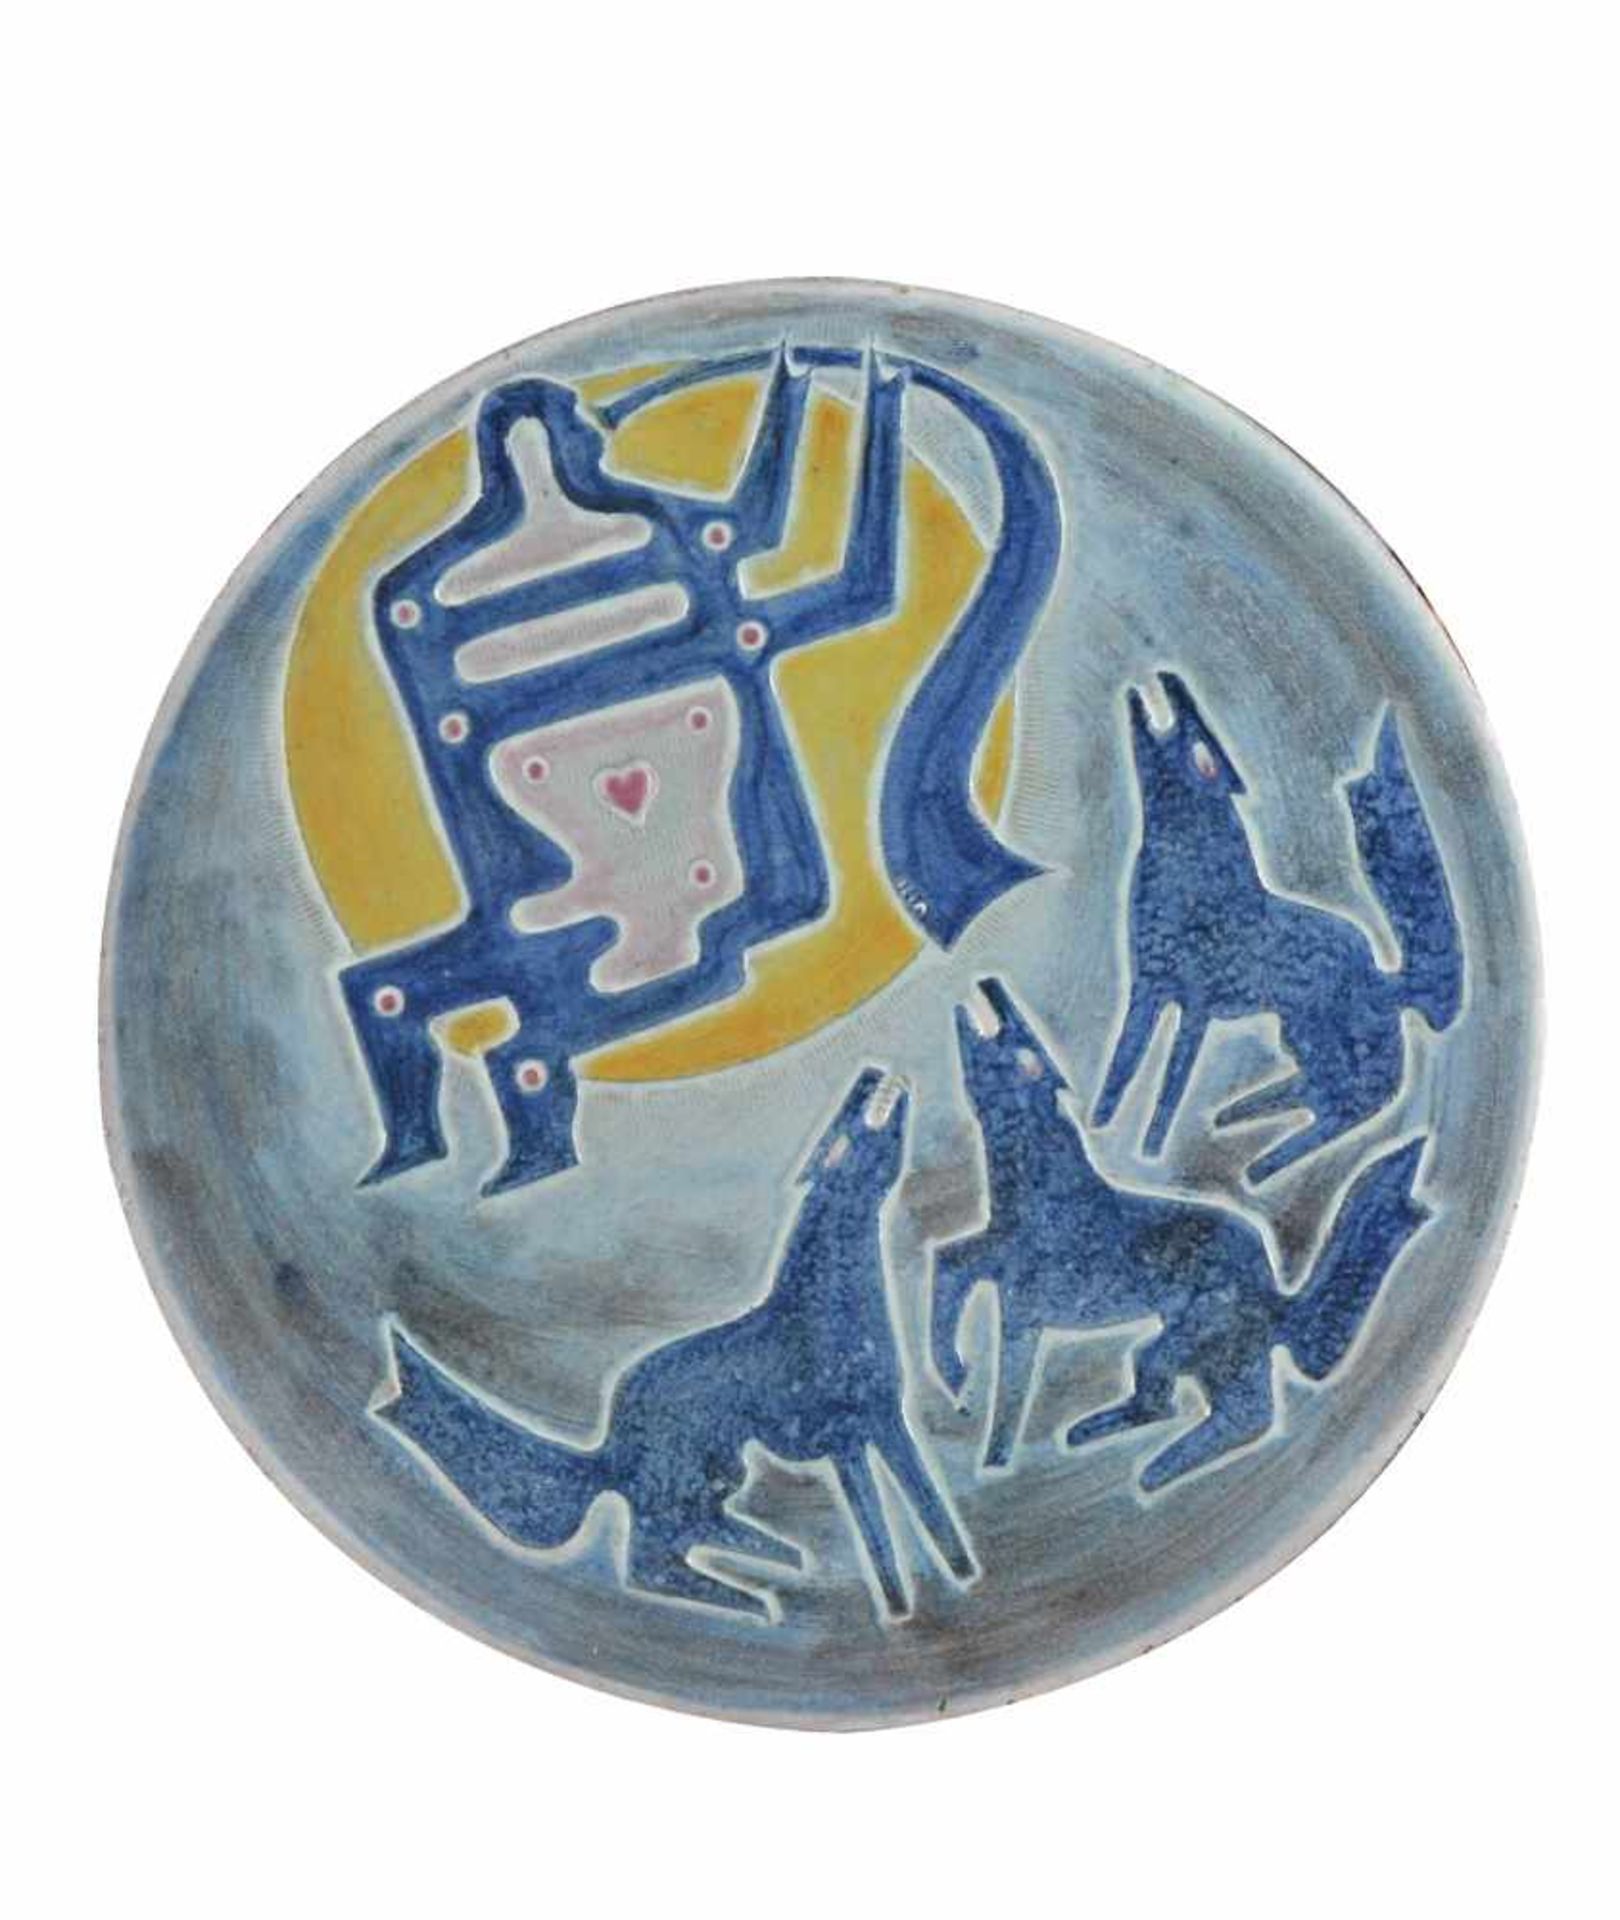 Rudolf KAISER (1910-1980)Keramik Wandteller, gemarkt und datiert 1964, Ø 43,7 cmRudolf KAISER (